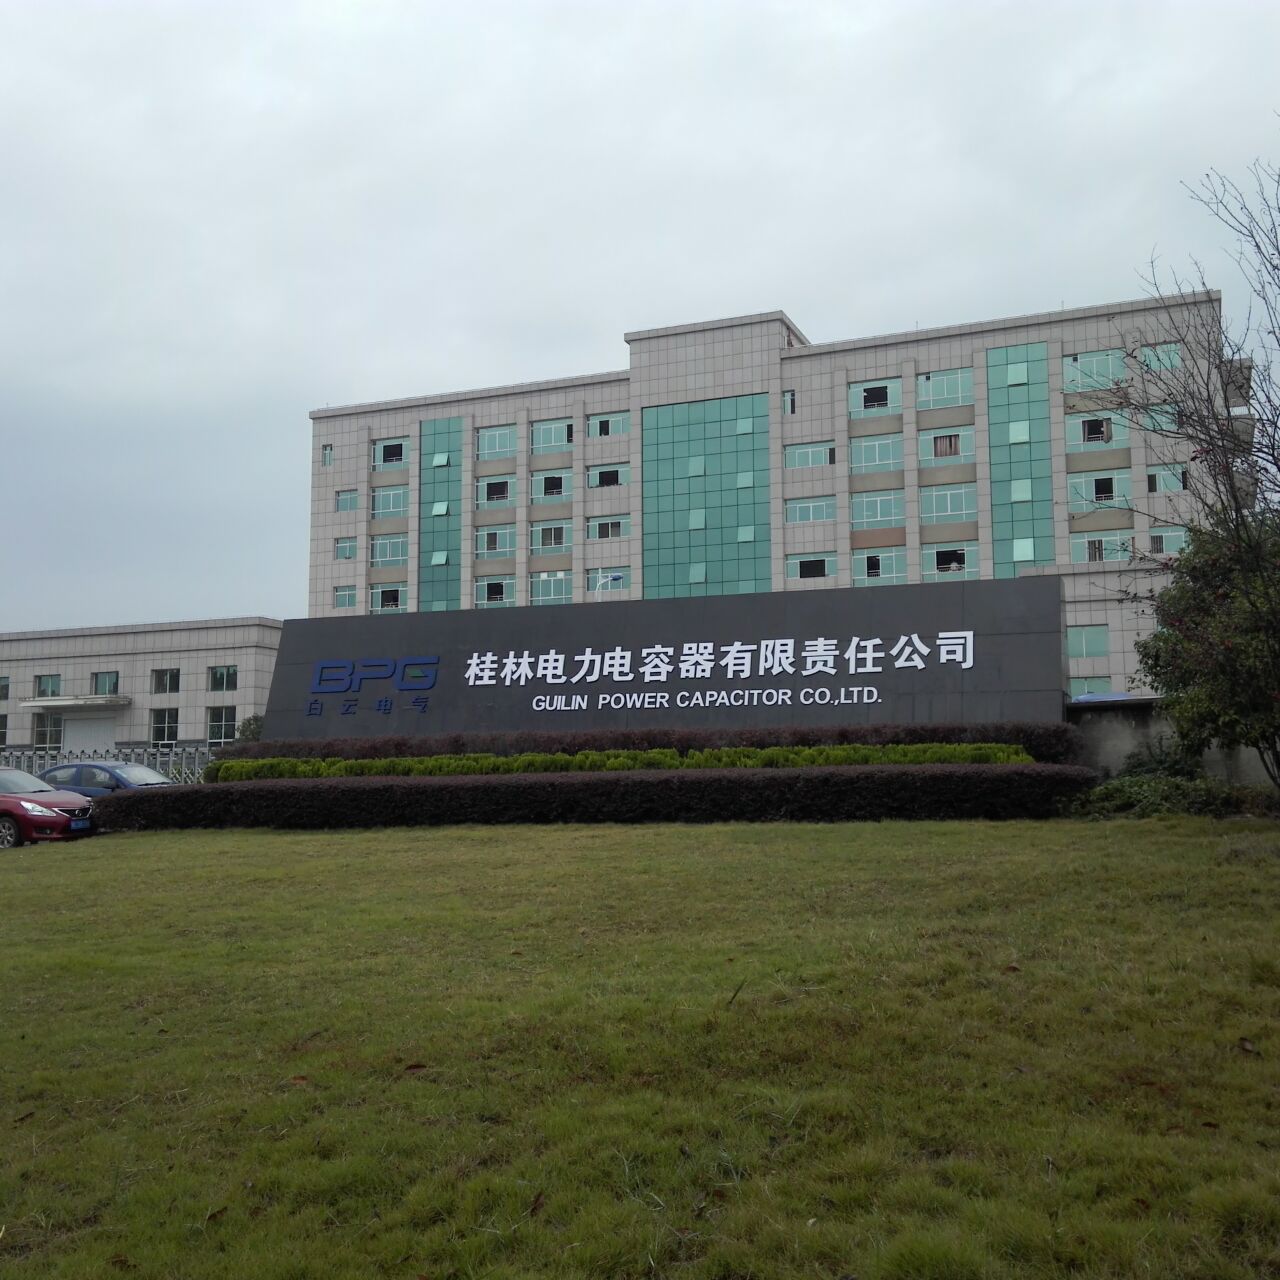 桂林电力电容器有限责任公司招聘